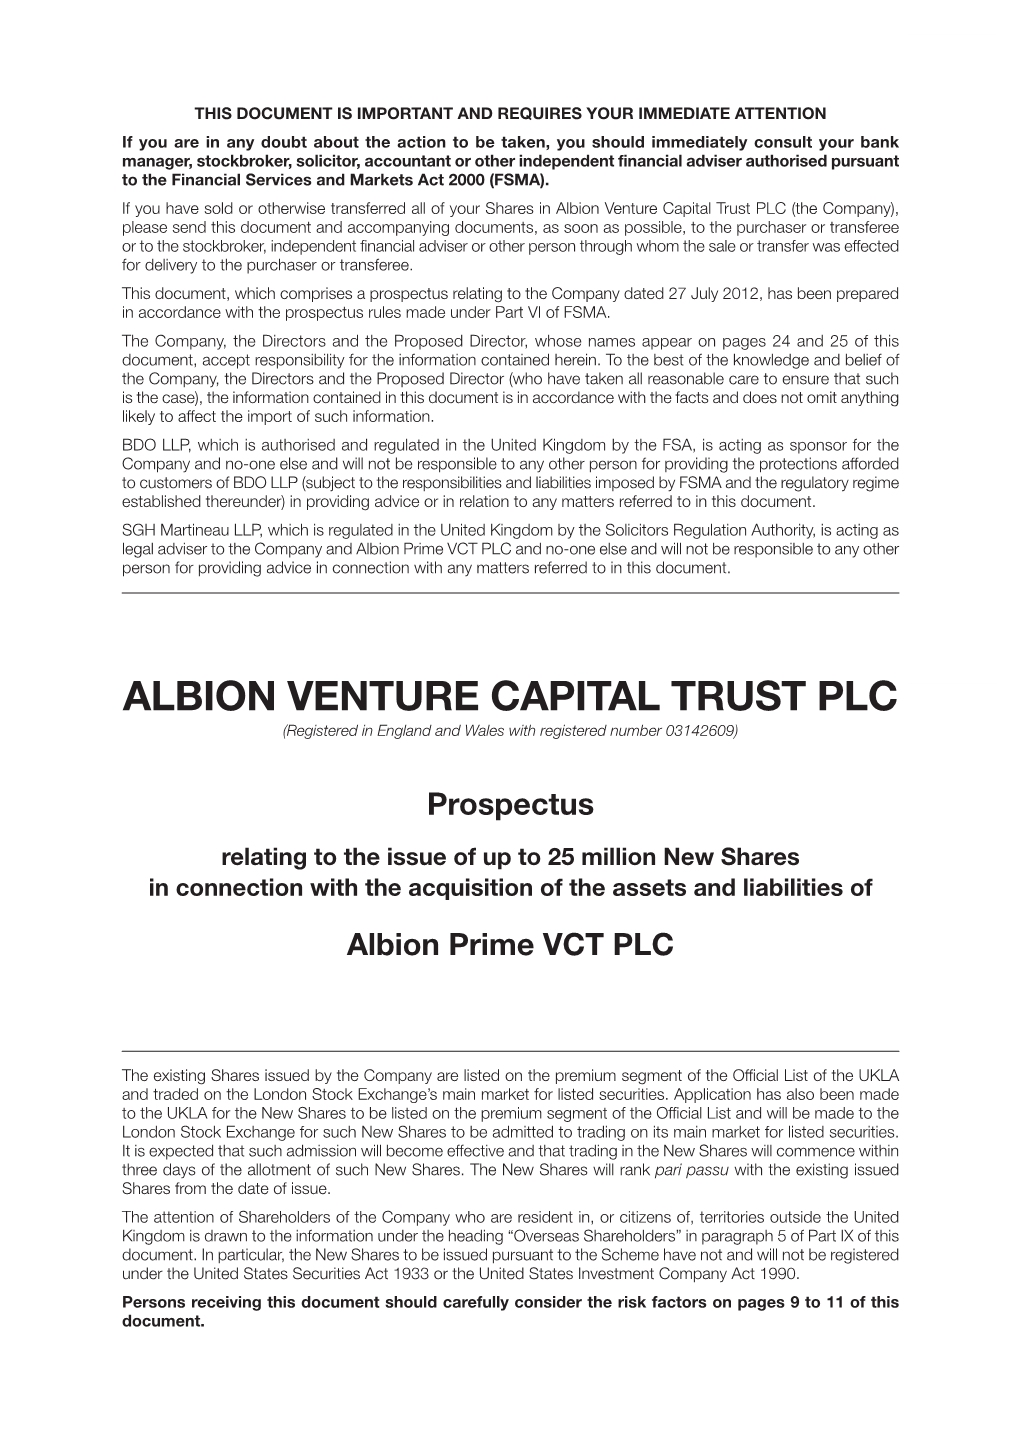 Albion Venture Capital Trust